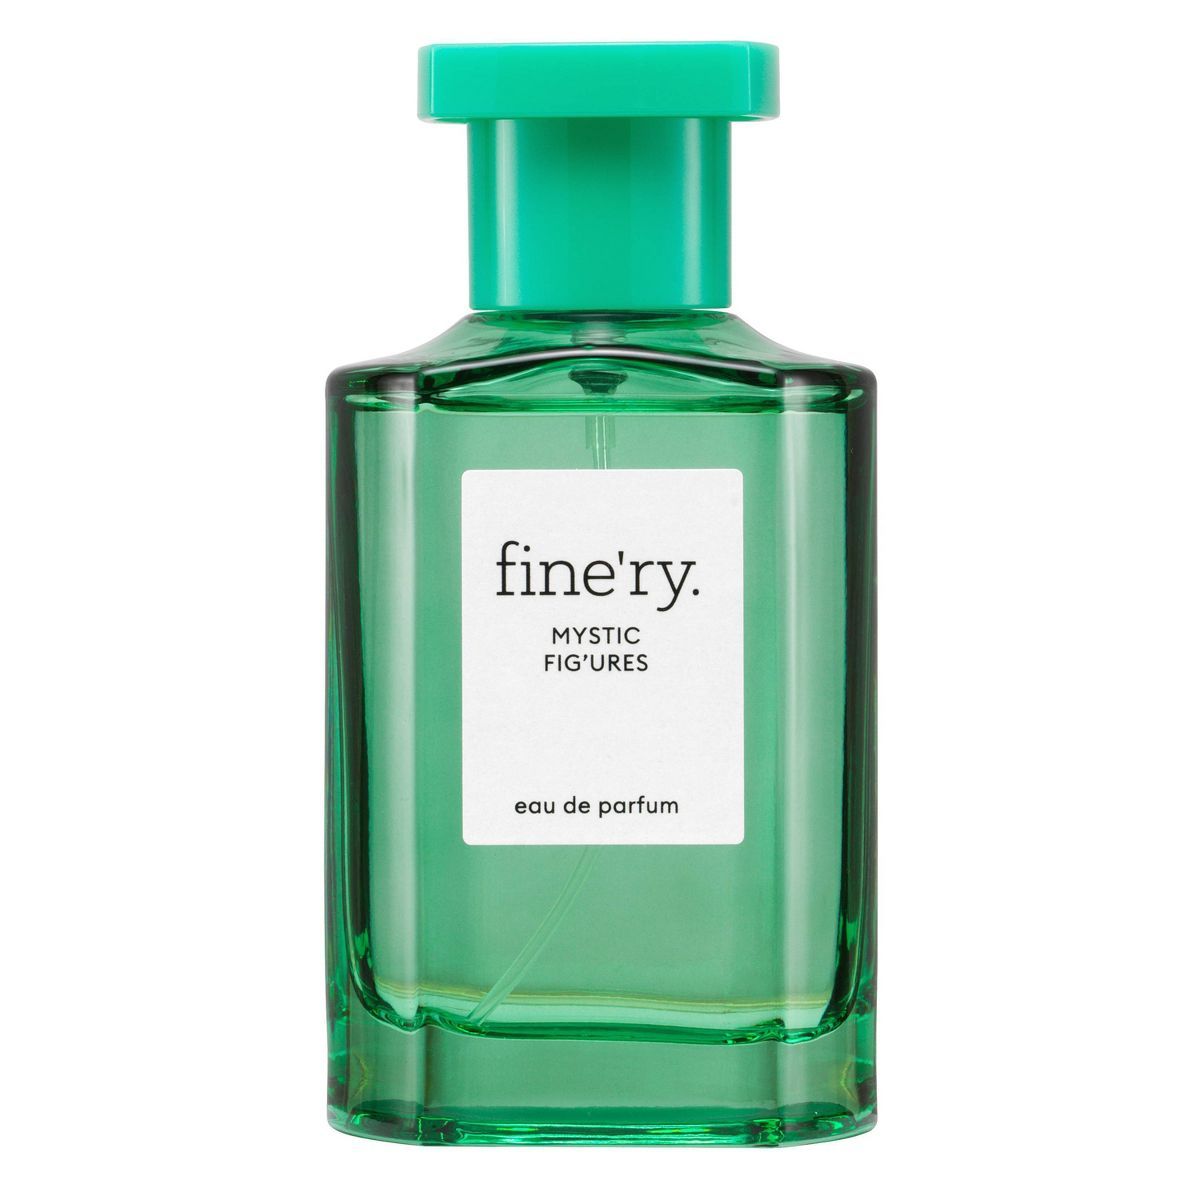 fine'ry. Women's Eau de Parfum Perfume - Mystic Figures - 2 fl oz | Target